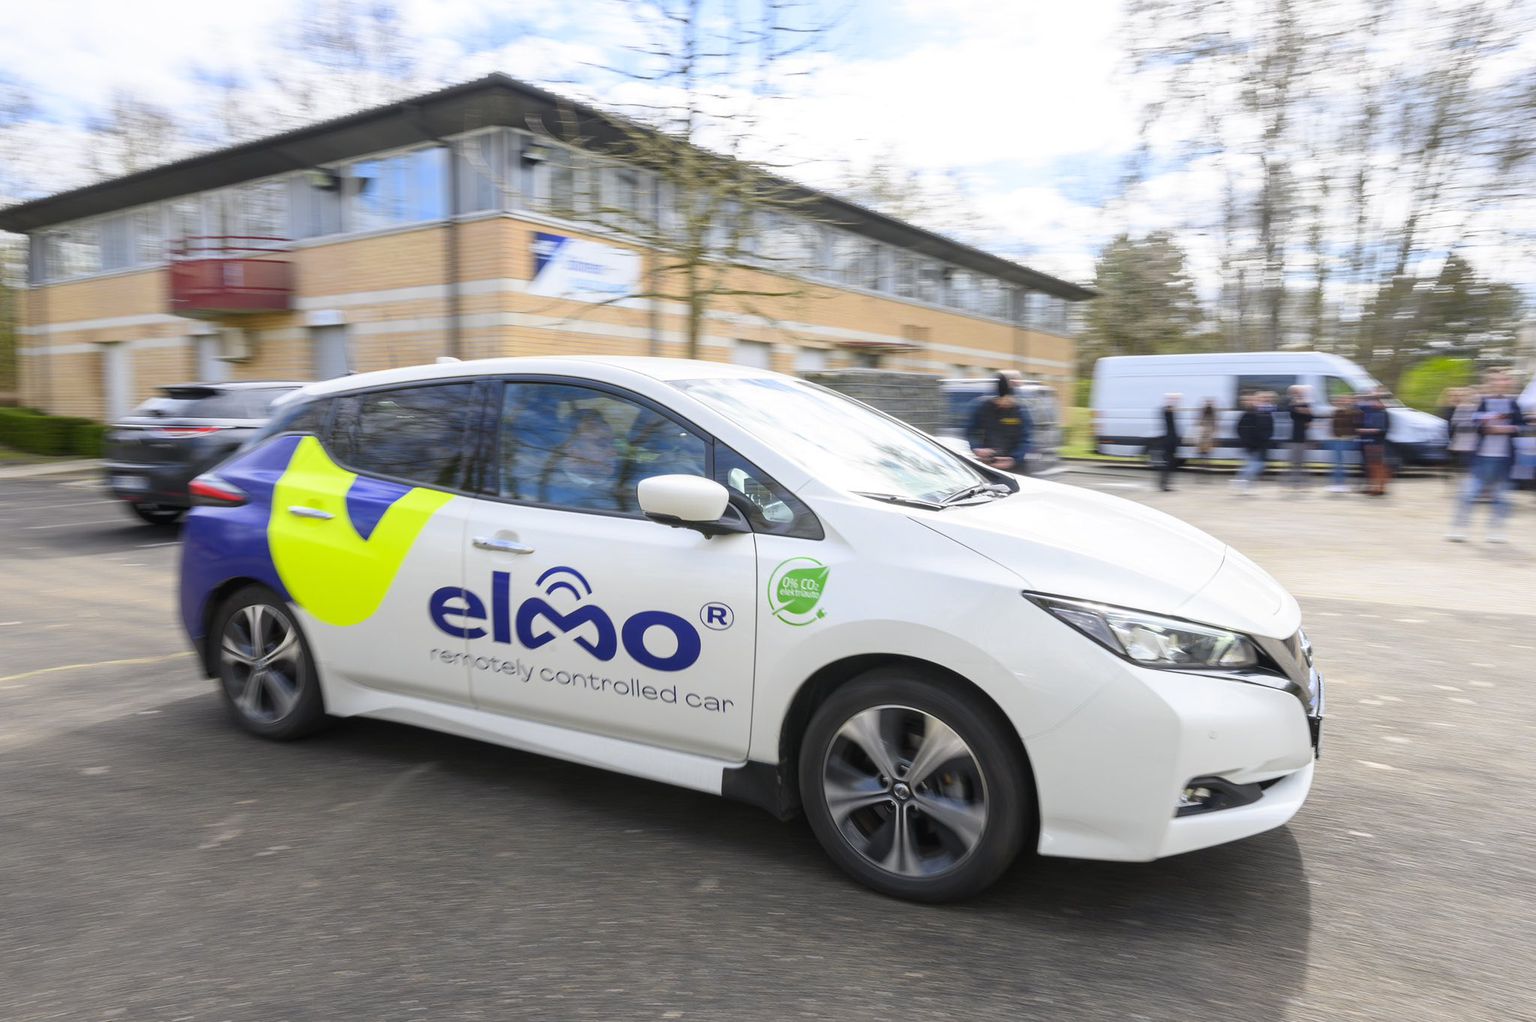 Maailmas esimesena kaugjuhitavad elektriautod jagamisteenusesse toonud Elmo kaasas rahvusvahelise haardega kasvukapitalifondilt ja teistelt investoritelt kokku 